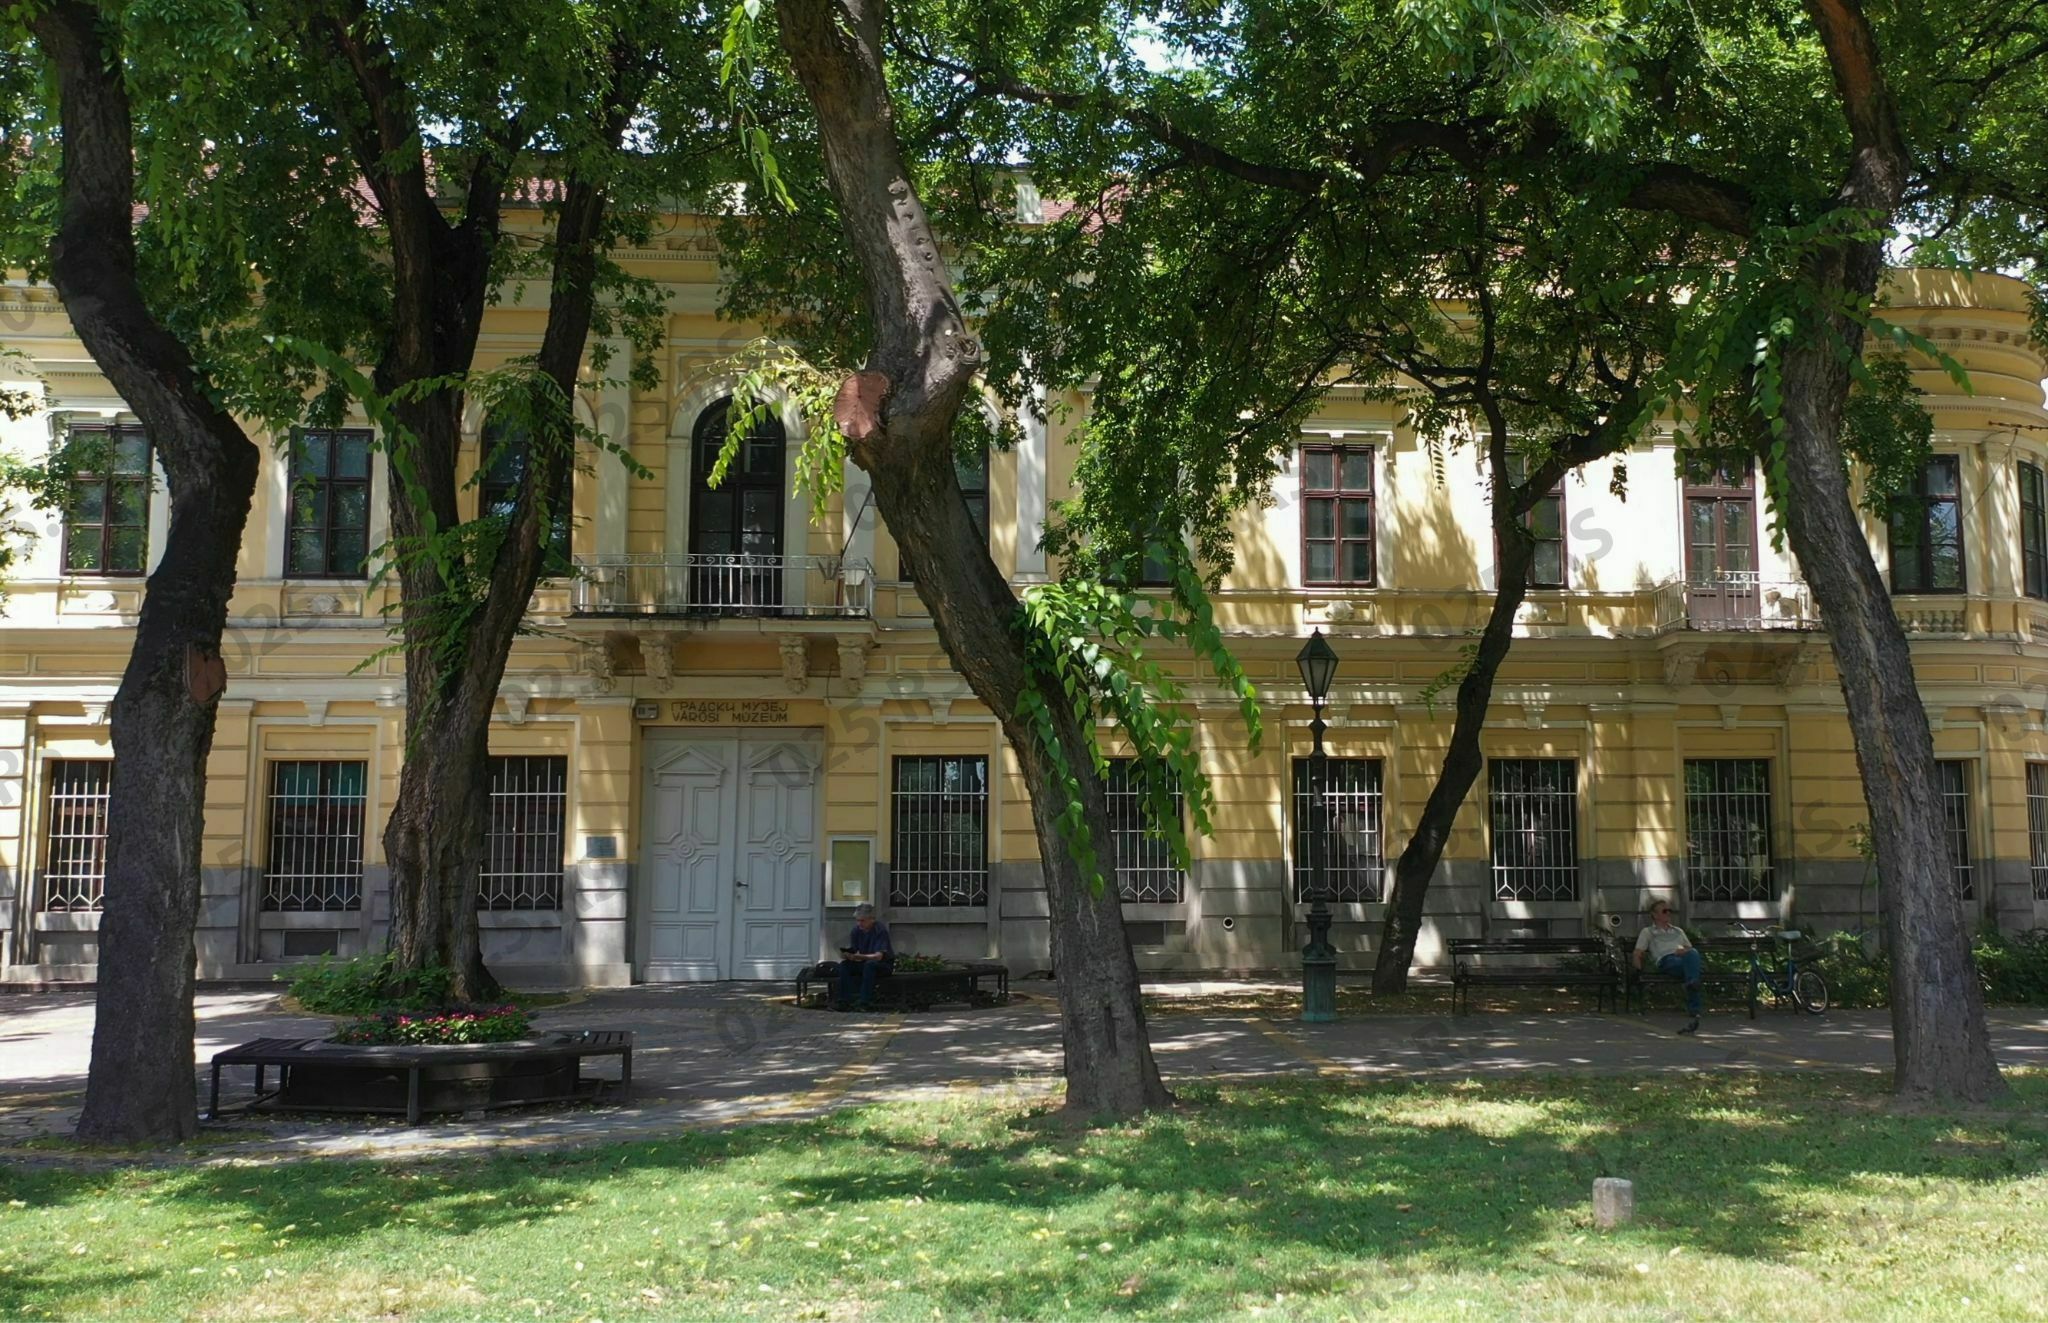 Gradski muzej Sombor